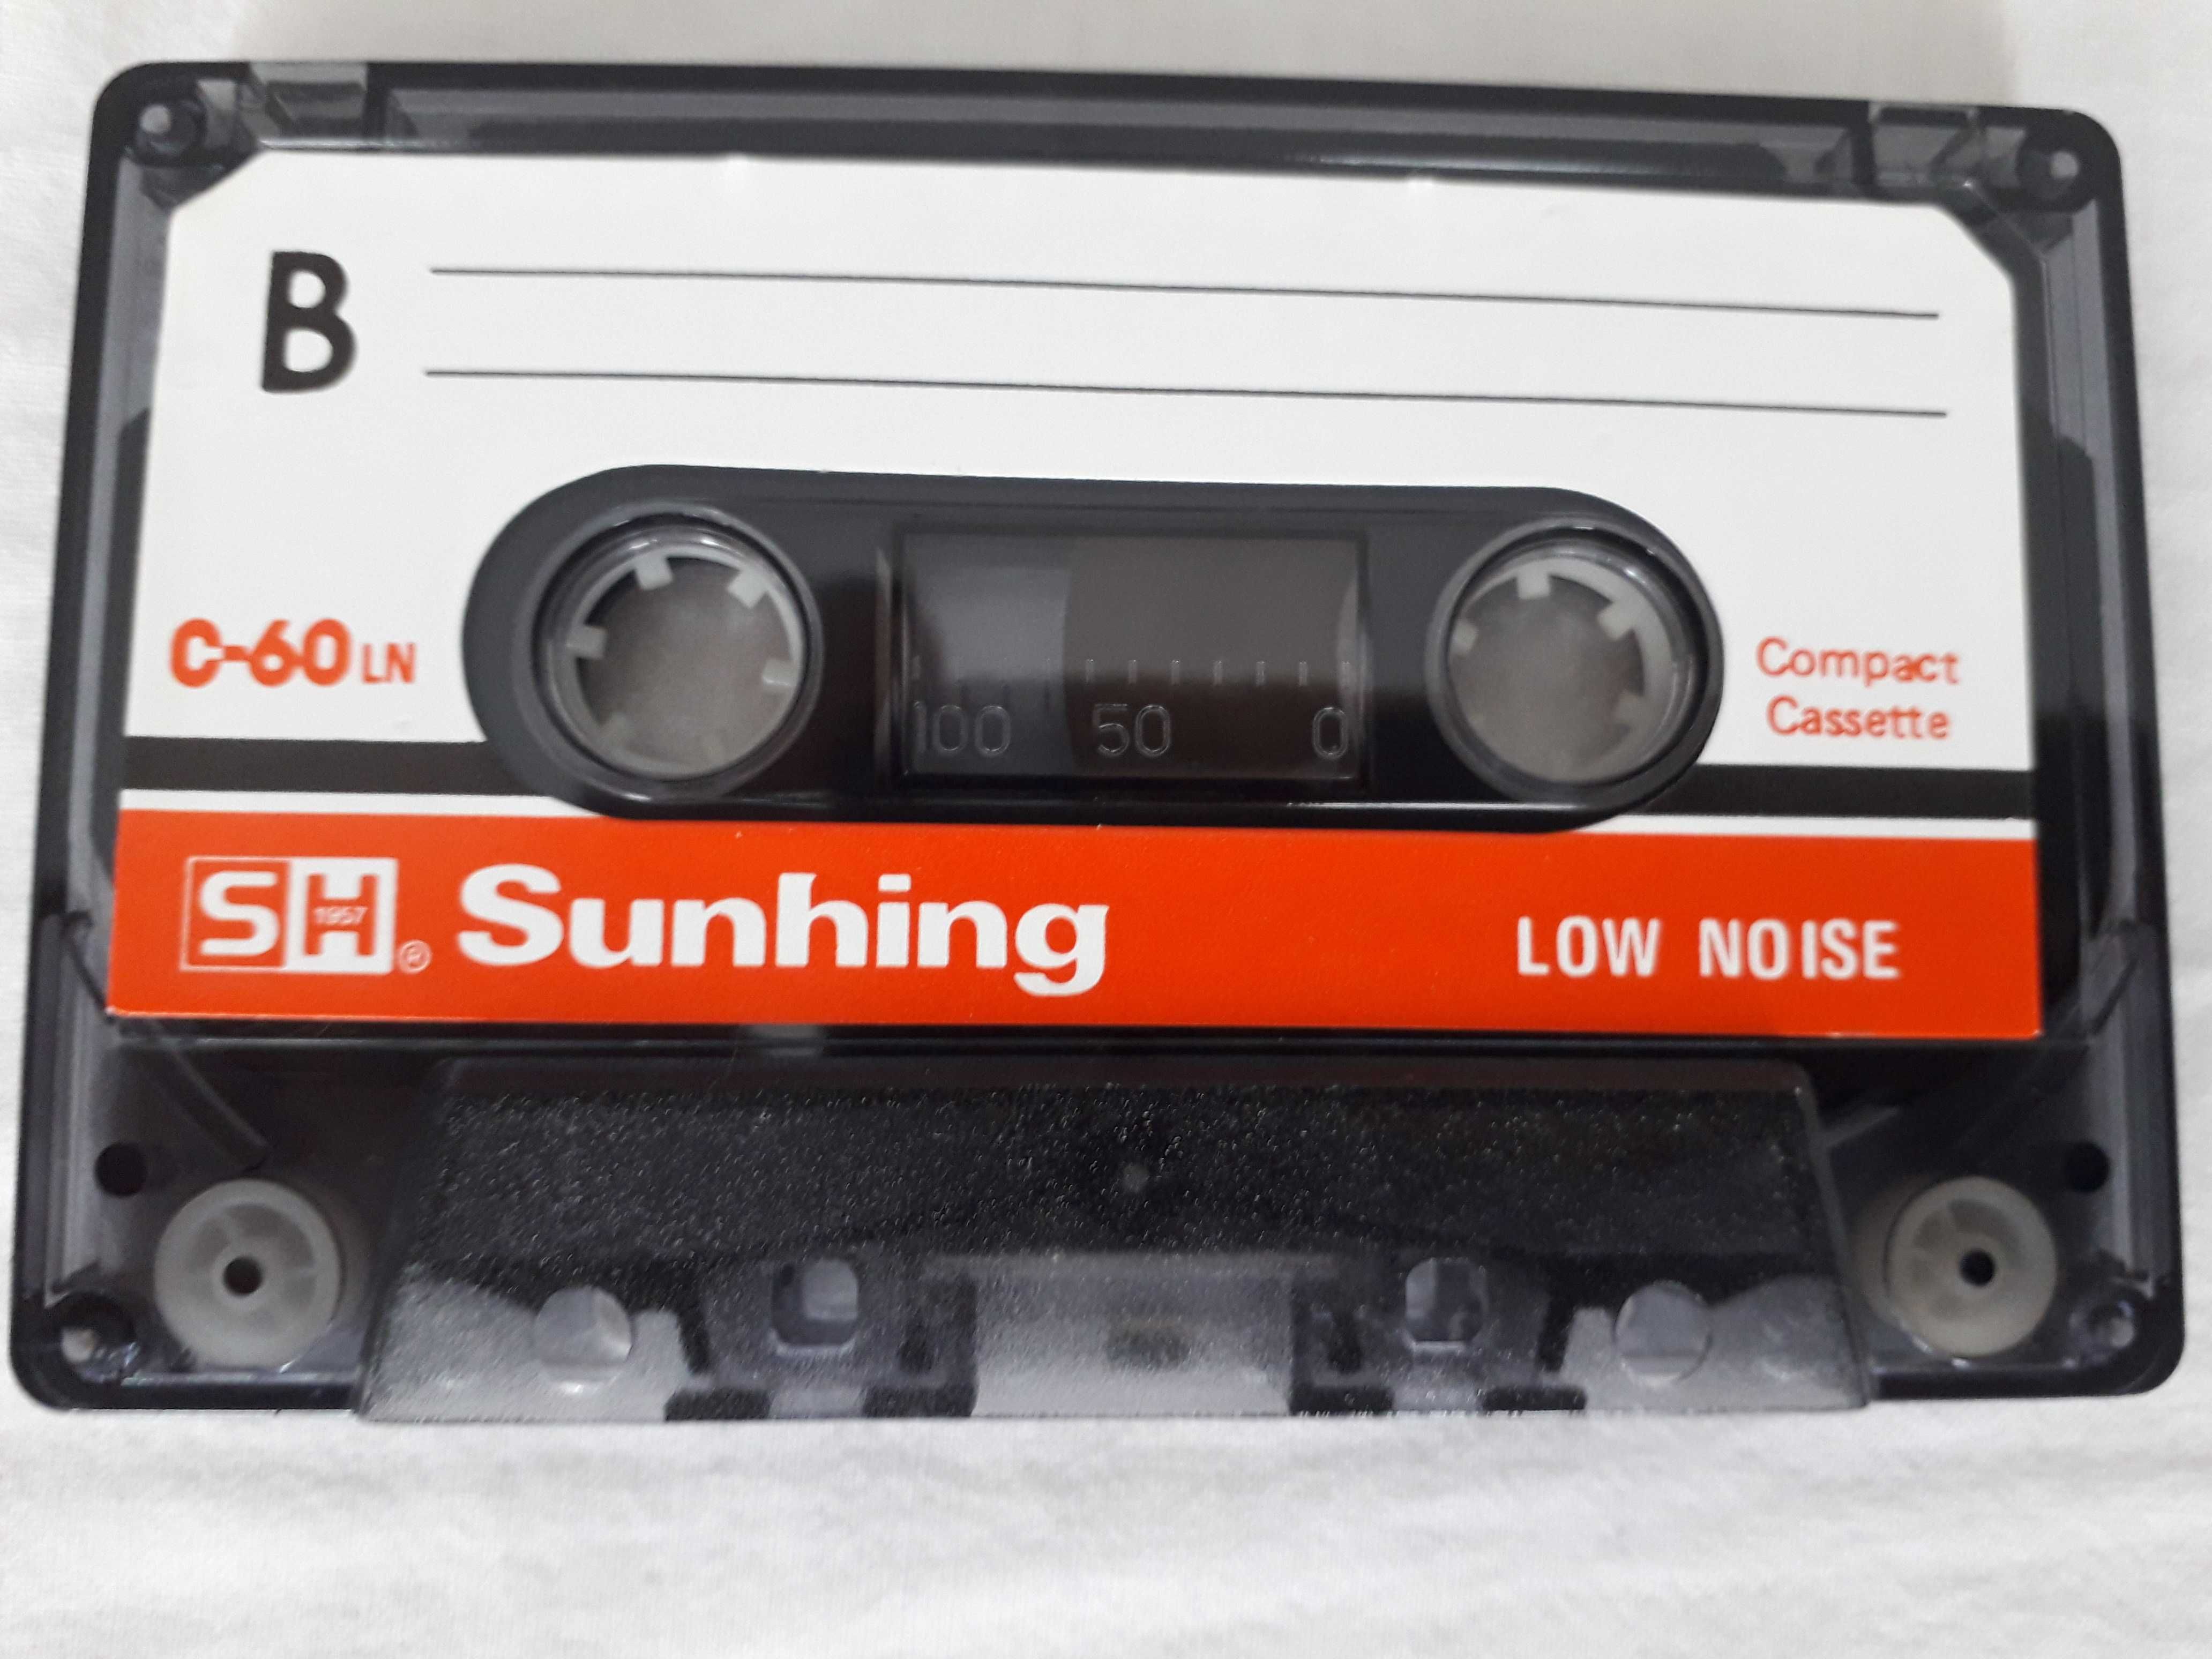 Продавам аудио касети Sunhing C-60LN